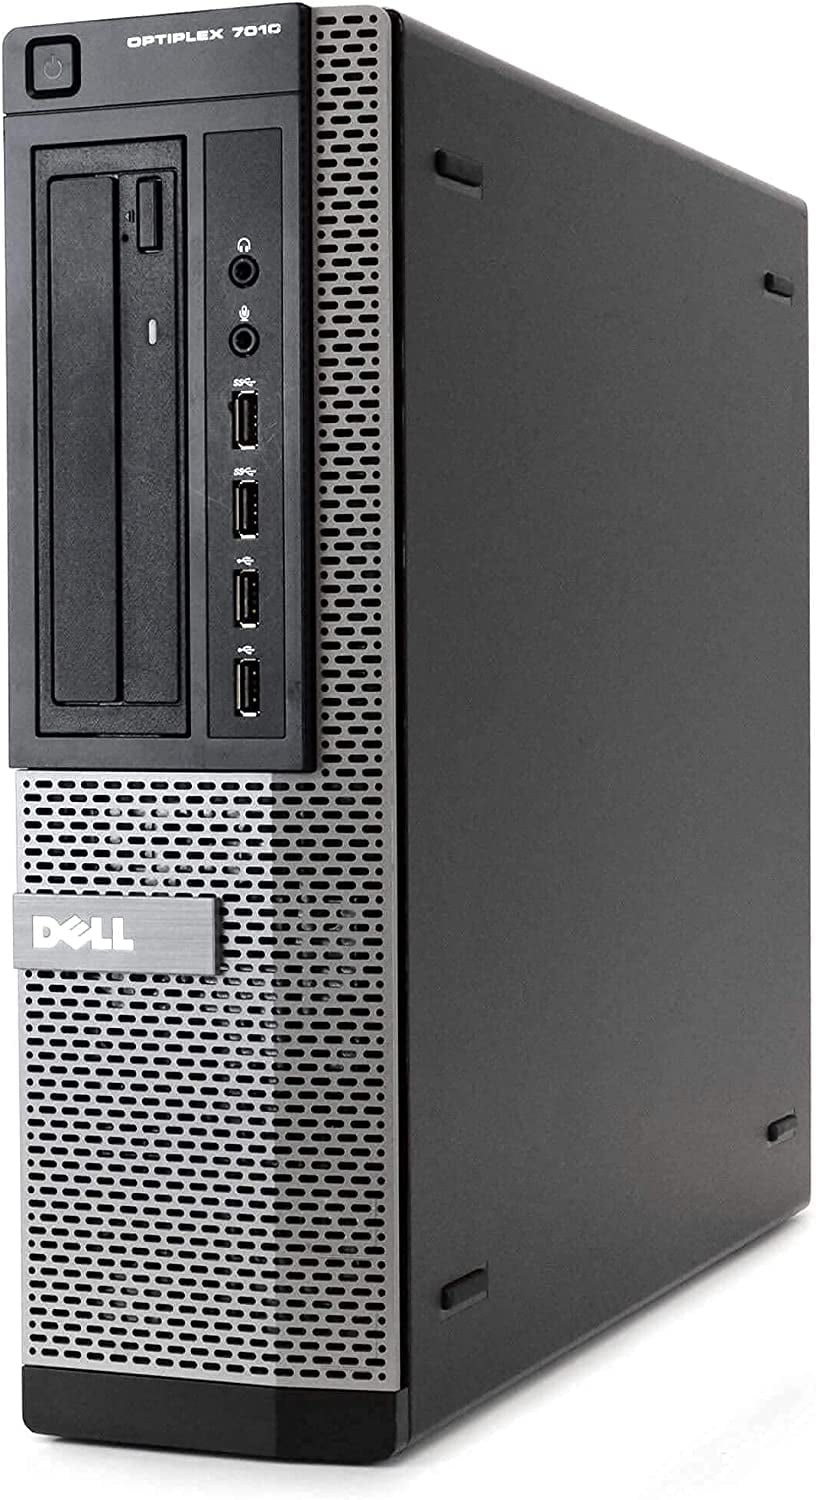 DELL Optiplex 7010 Desktop Computer PC, Intel Quad-Core i5, 240GB SSD, 8GB  DDR3 RAM, Windows 10 Pro, DVD, WIFI, New 24in Monitor, RGB Keyboard and 